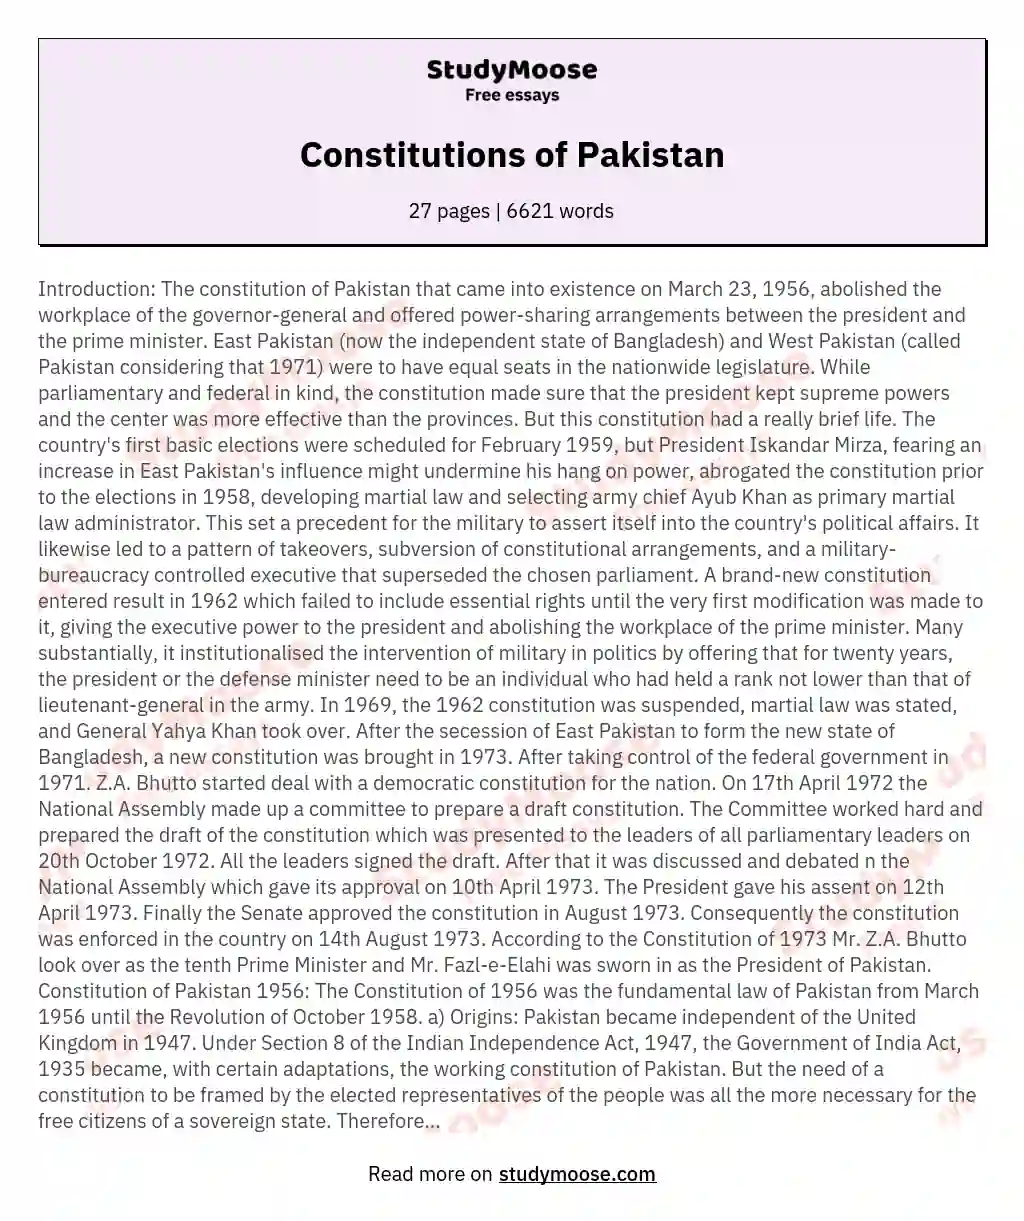 Constitutions of Pakistan essay